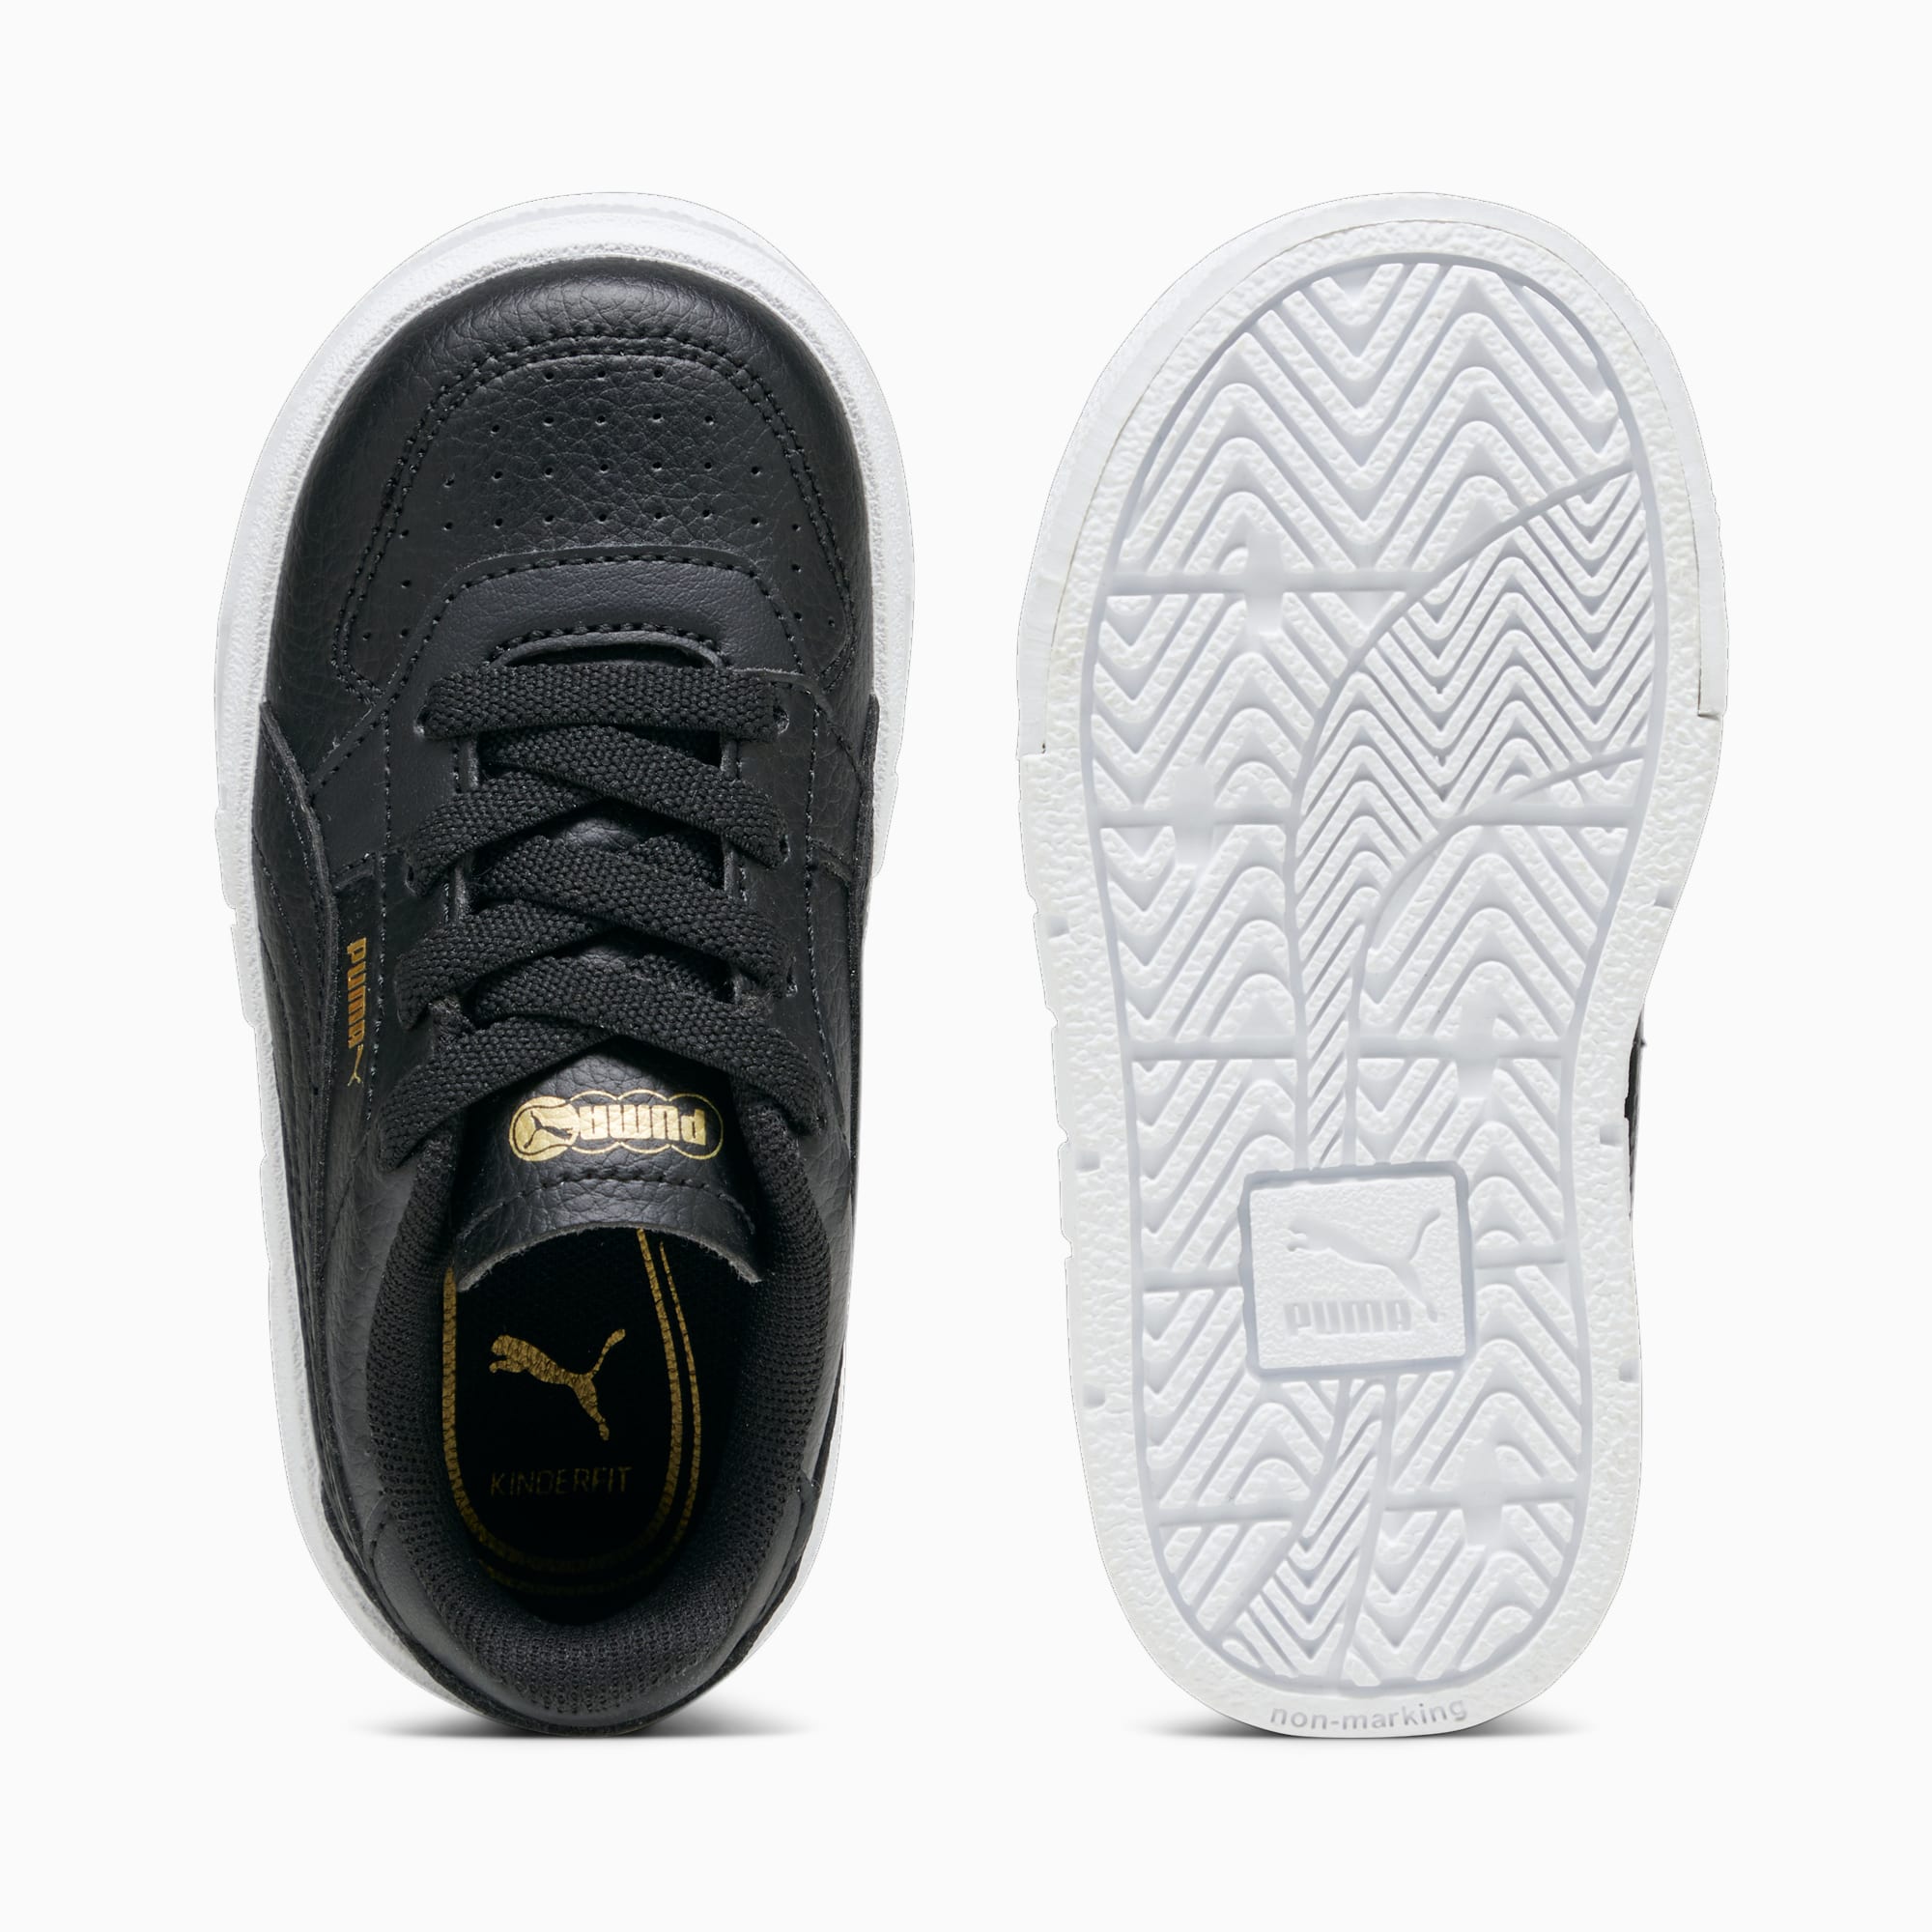 Scarpe Sneaker PUMA Cali Court Leather Per Bimba Ai Primi Passi, Bianco/Nero/Altro